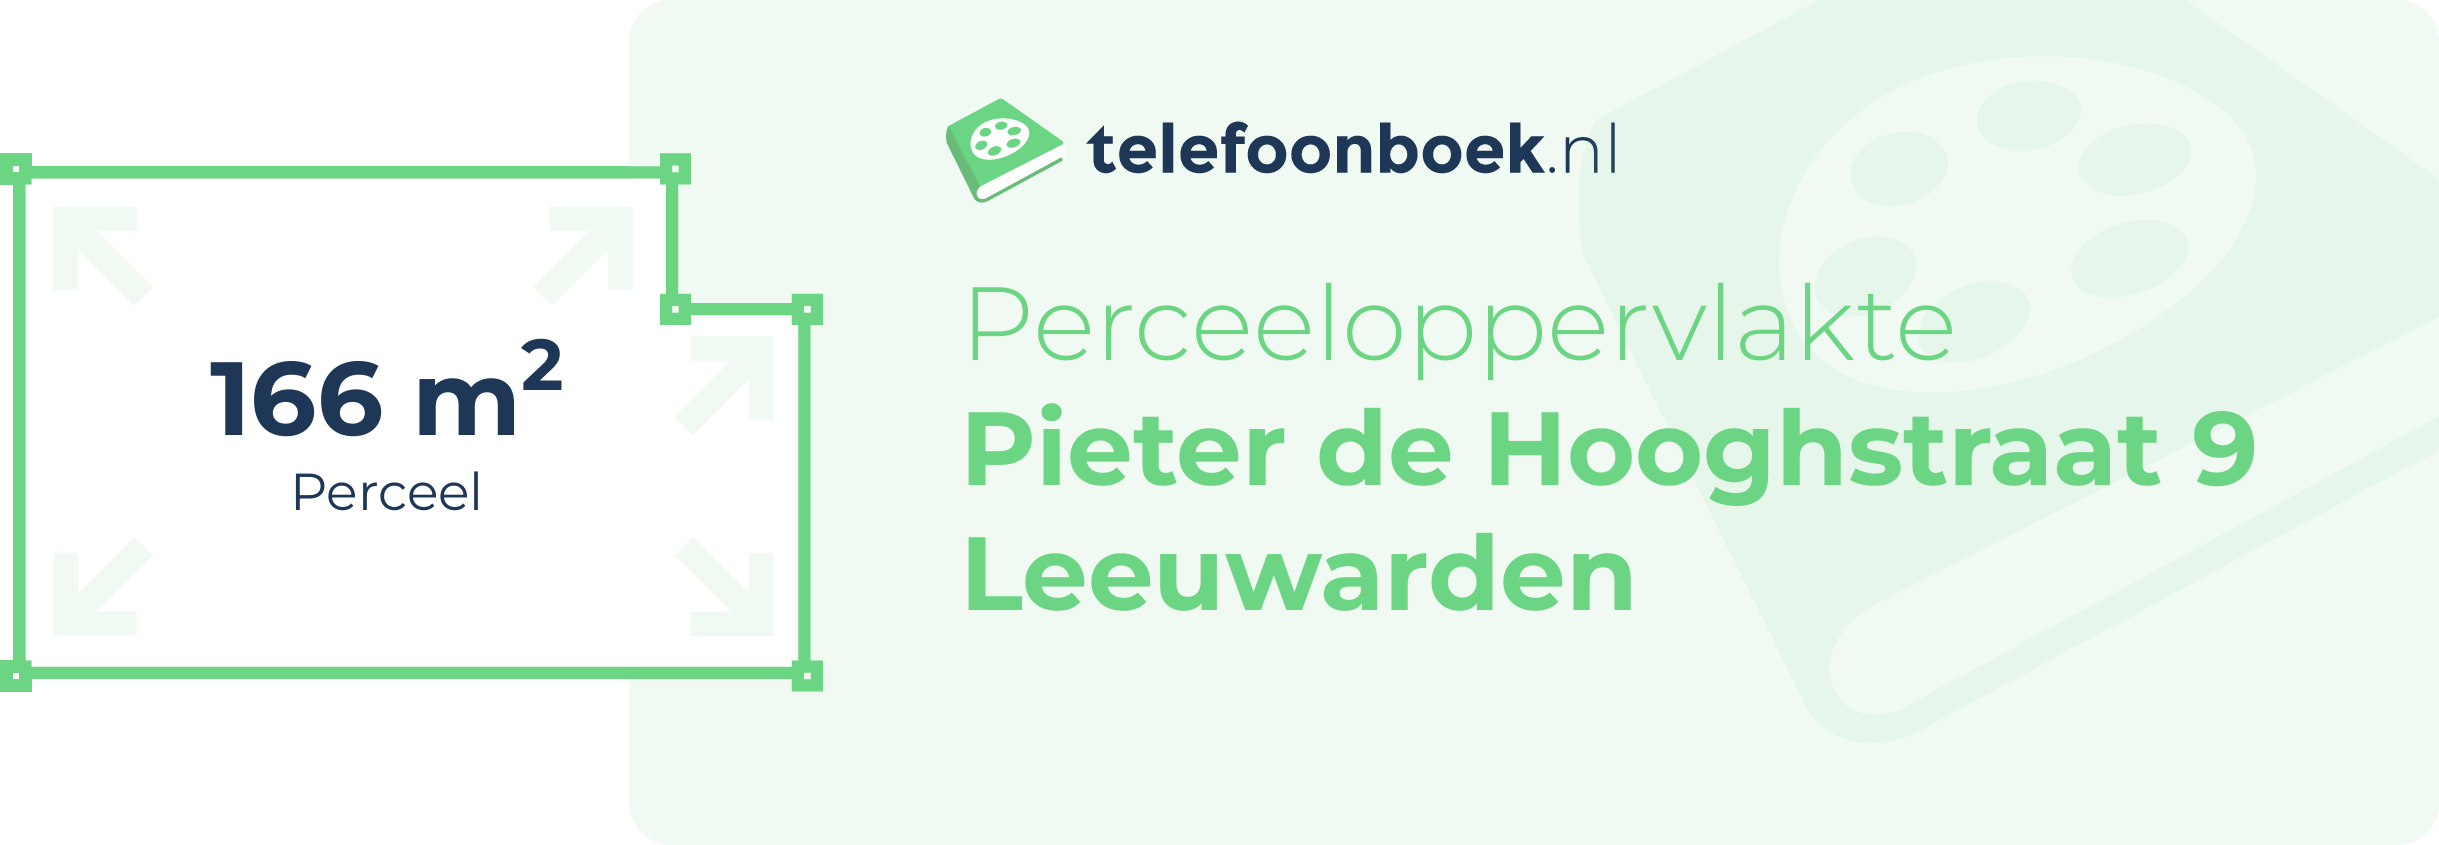 Perceeloppervlakte Pieter De Hooghstraat 9 Leeuwarden